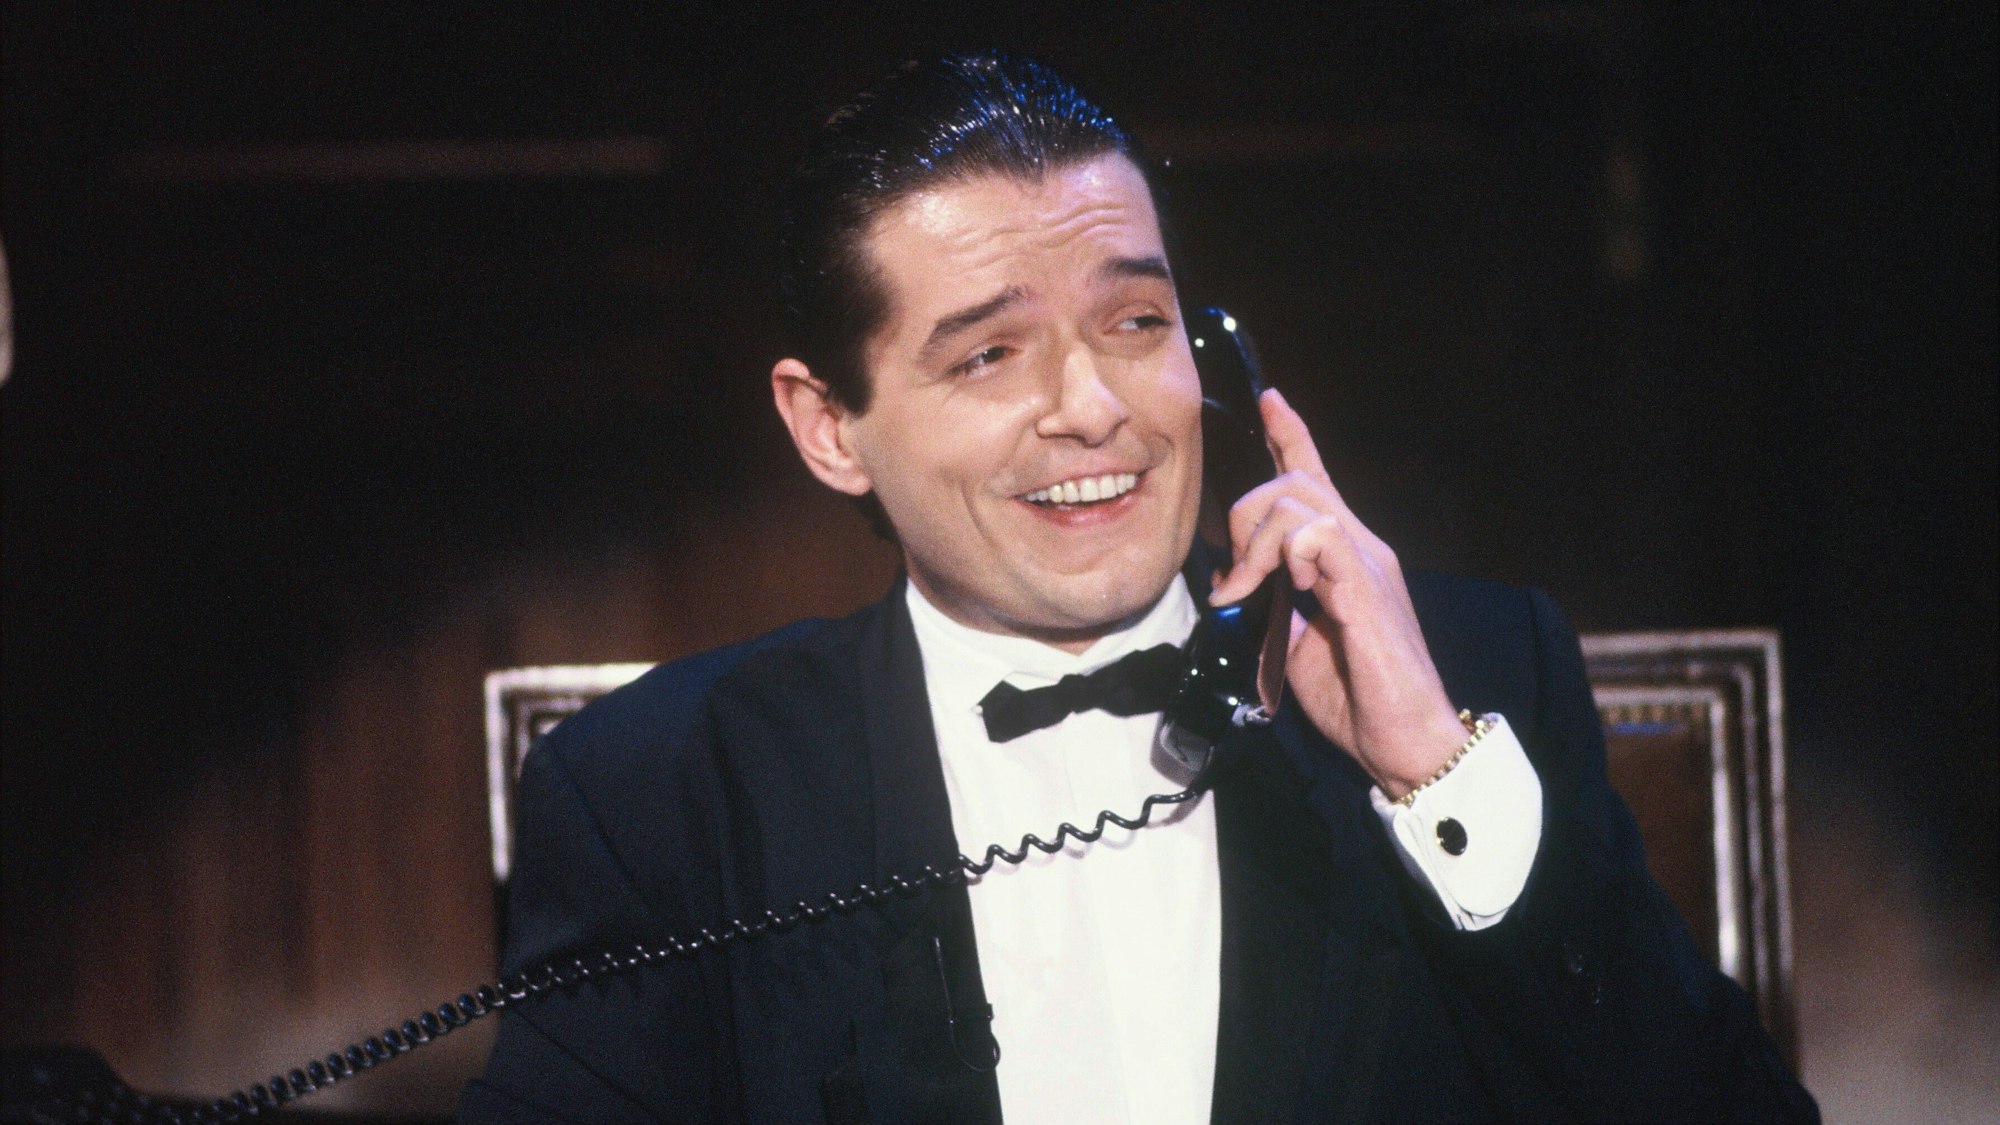 Der Sänger Falco bei einem TV-Auftritt in der Show „Wir gratulieren“ am 6.10.1985. Falco hält einen Telefonhörer und lacht.